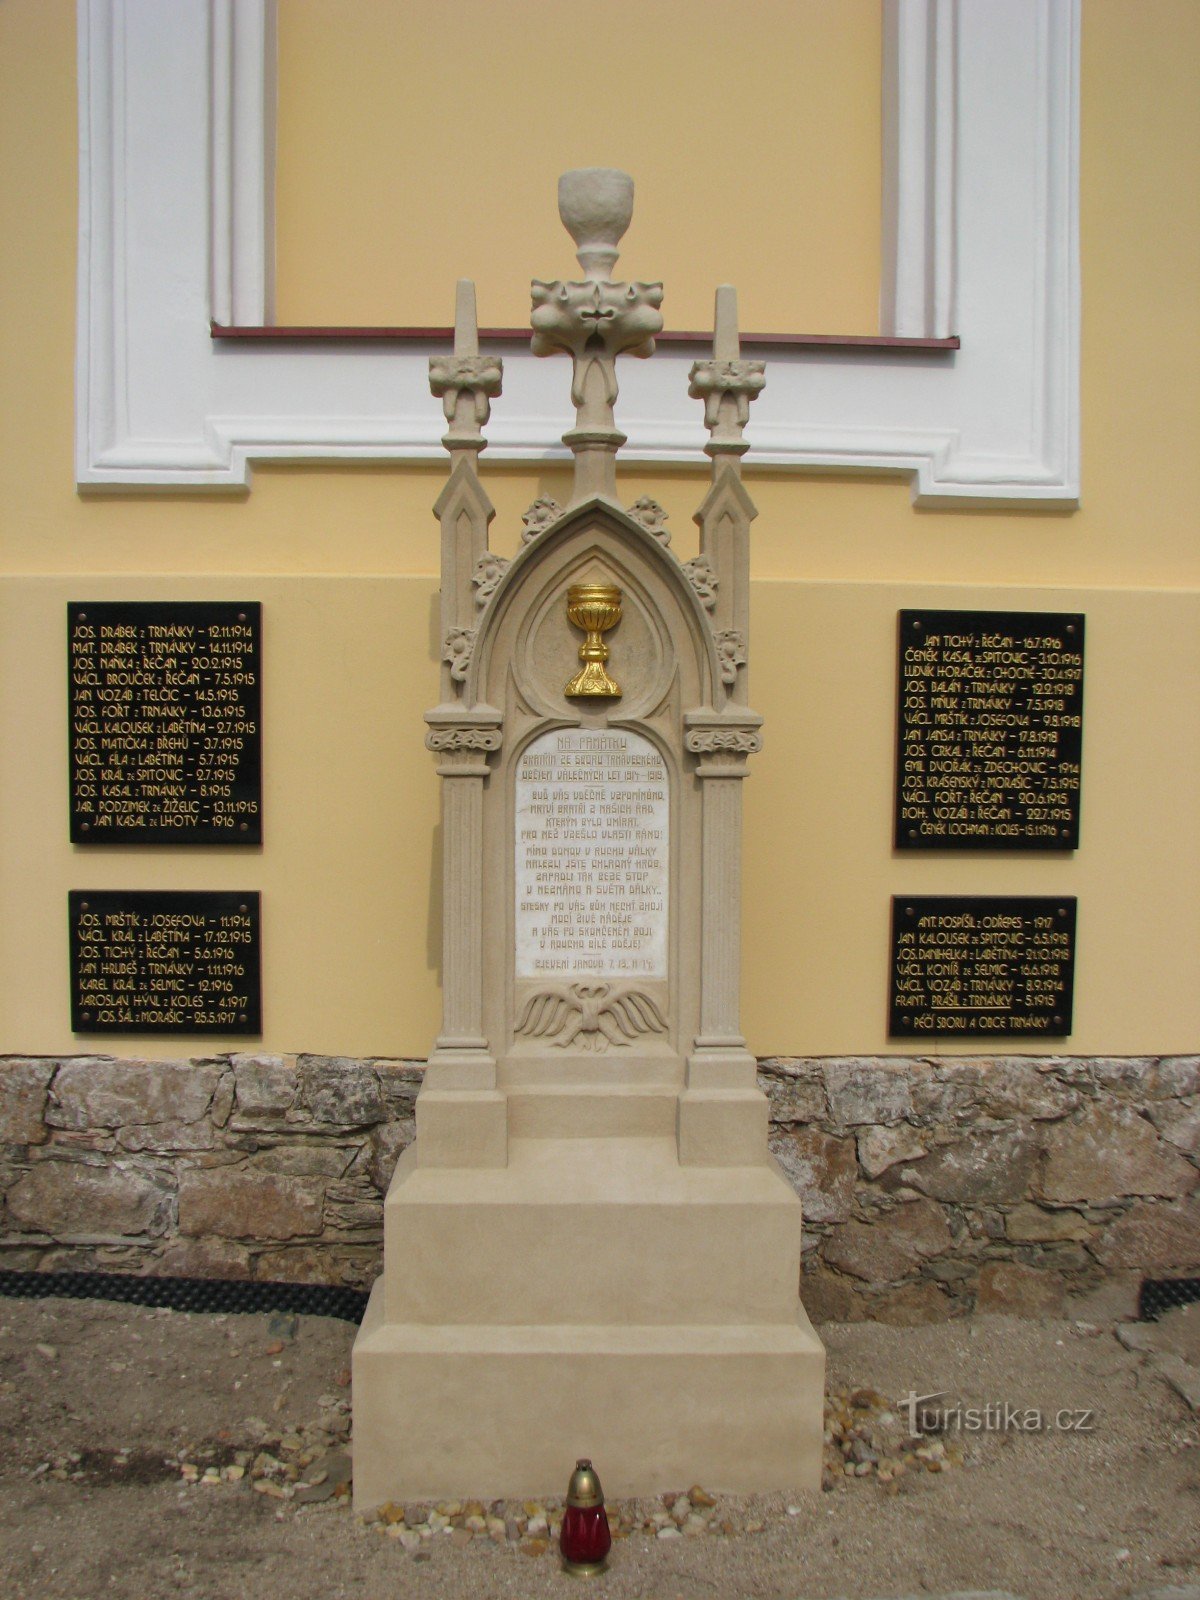 Monument voor de gevallenen uit de Eerste Wereldoorlog